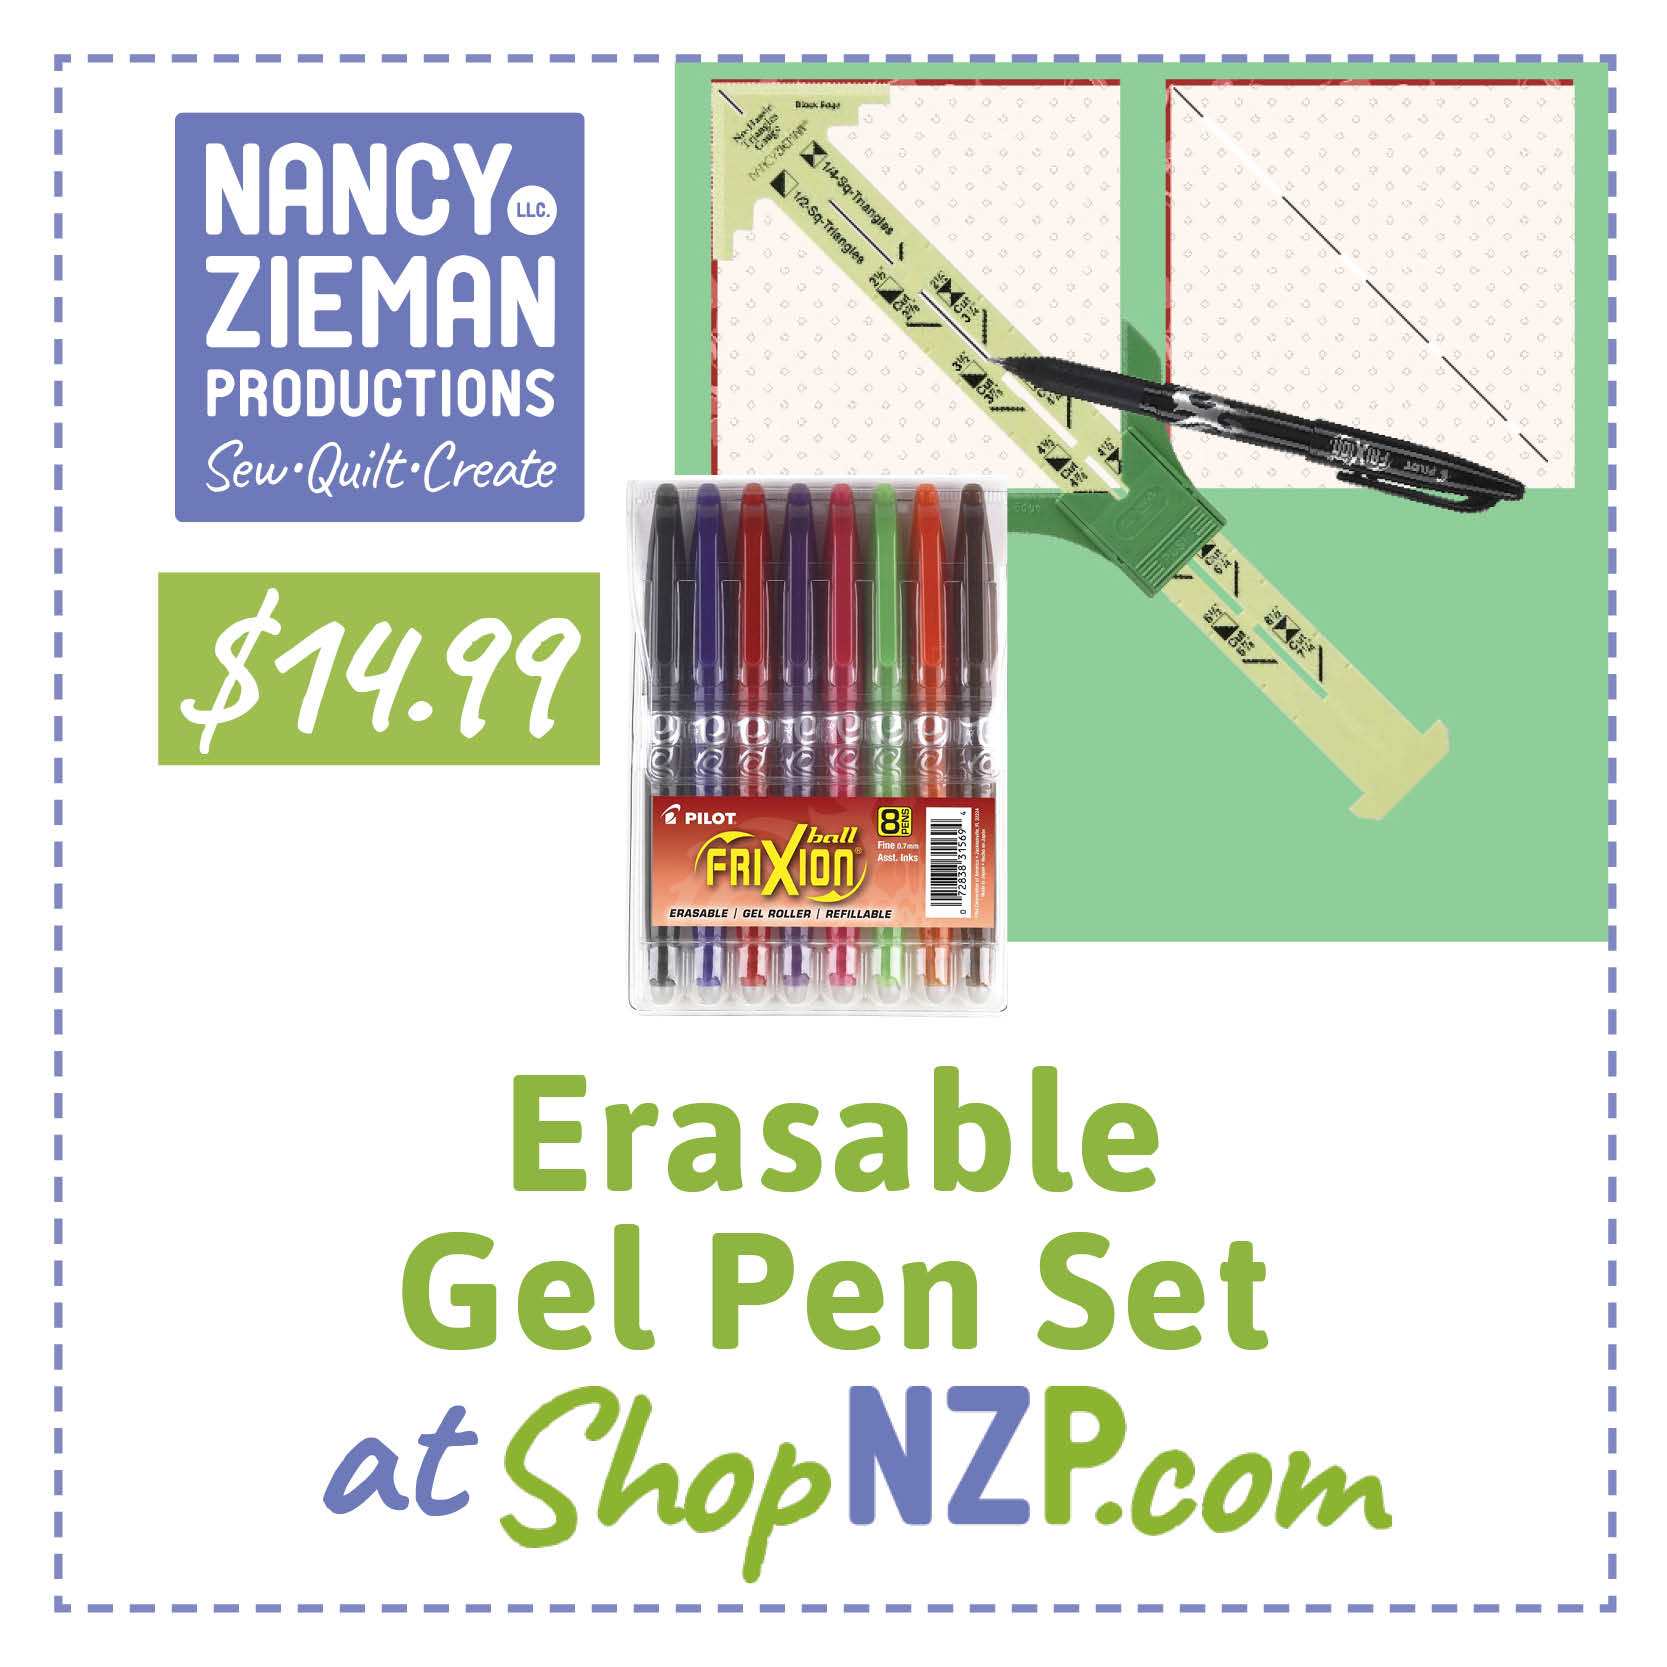 Erasable Gel Frixion Pen Set available at ShopNZP.com